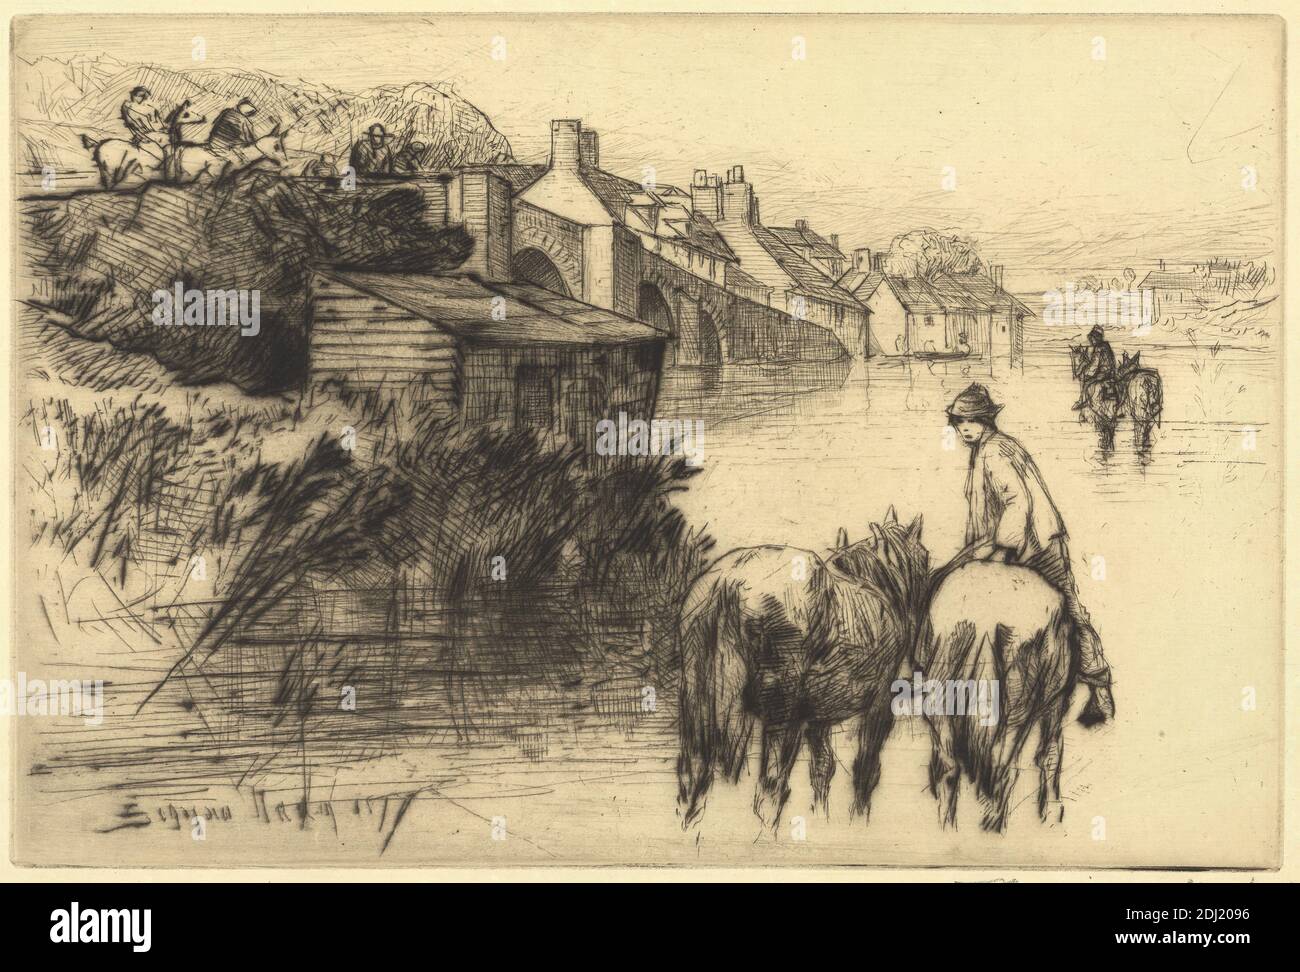 Wareham Bridge, Francis Seymour Haden, 1818–1910, British, 1877, Ätzung und Trockenpunkt, mit Tellenton auf mittlerem, glattem, cremefarbenem, antikem Papier, Blatt: 7 1/8 x 10 3/16 Zoll (18.1 x 25.8 cm), Platte: 5 7/8 x 8 3/4 Zoll (15 x 22.3 cm), und Bild: 5 7/8 x 8 3/4 Zoll (15 x 22.3 cm), Tierkunst, Bögen, architektonisches Motiv, Banken, Brücke (gebaut), Gebäude, Kamine, Stadtbild, Hütten, Figuren, Flut, Fording, Hut, Hügel, Pferde (Tiere), Häuser, Männer, Schilf, Reiter, Pferd, Fluss, Dächer, Ufer, Dorf, Dorset, England, Europa, Vereinigtes Königreich, Wareham Stockfoto